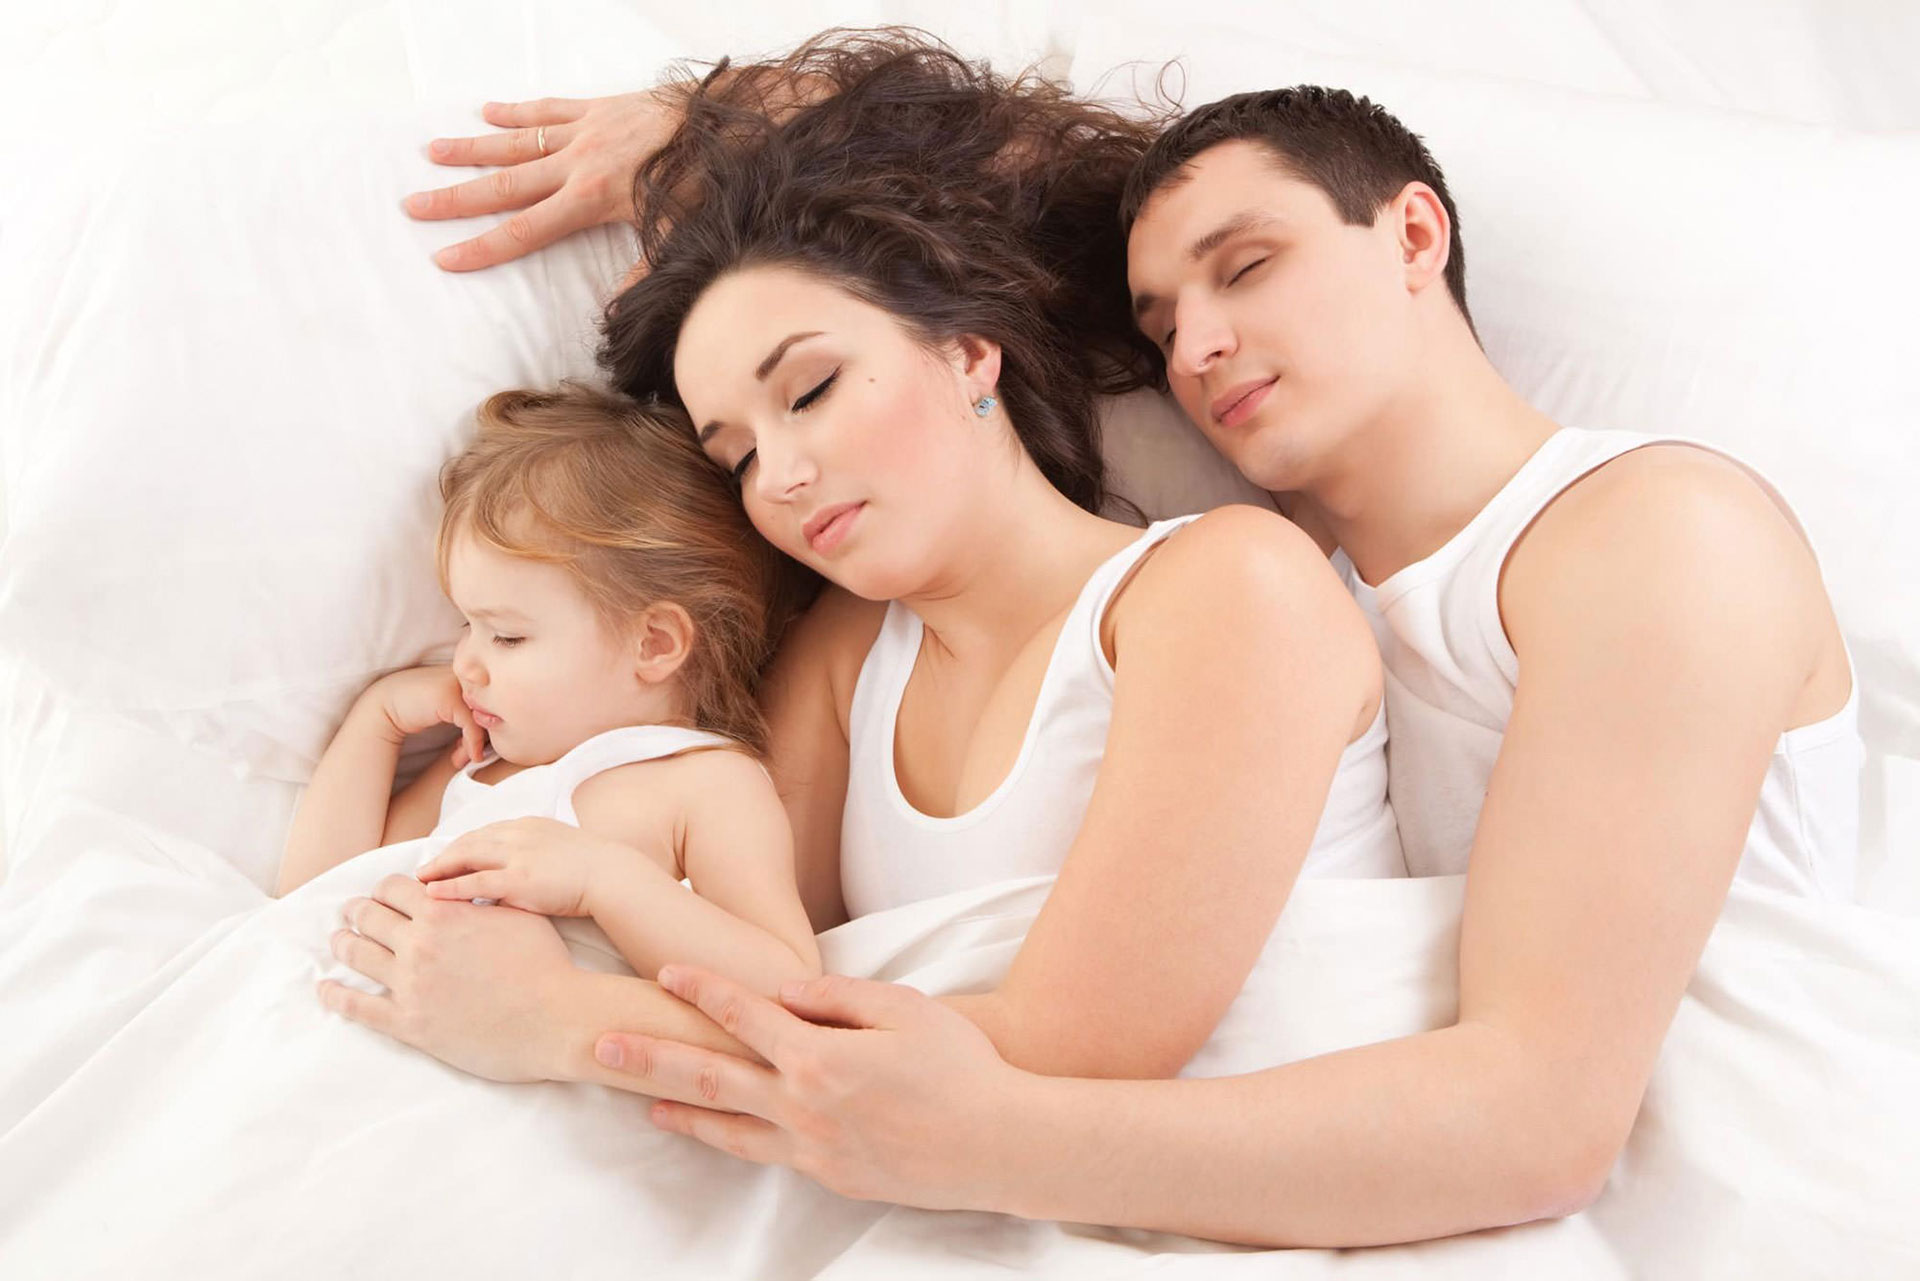 Linea Baby - Materasso Lattice Per i bambini - Materasso Espanso per i bambini - Guanciale Antiacaro per i bambini  x materasso lecce divano opinioni 